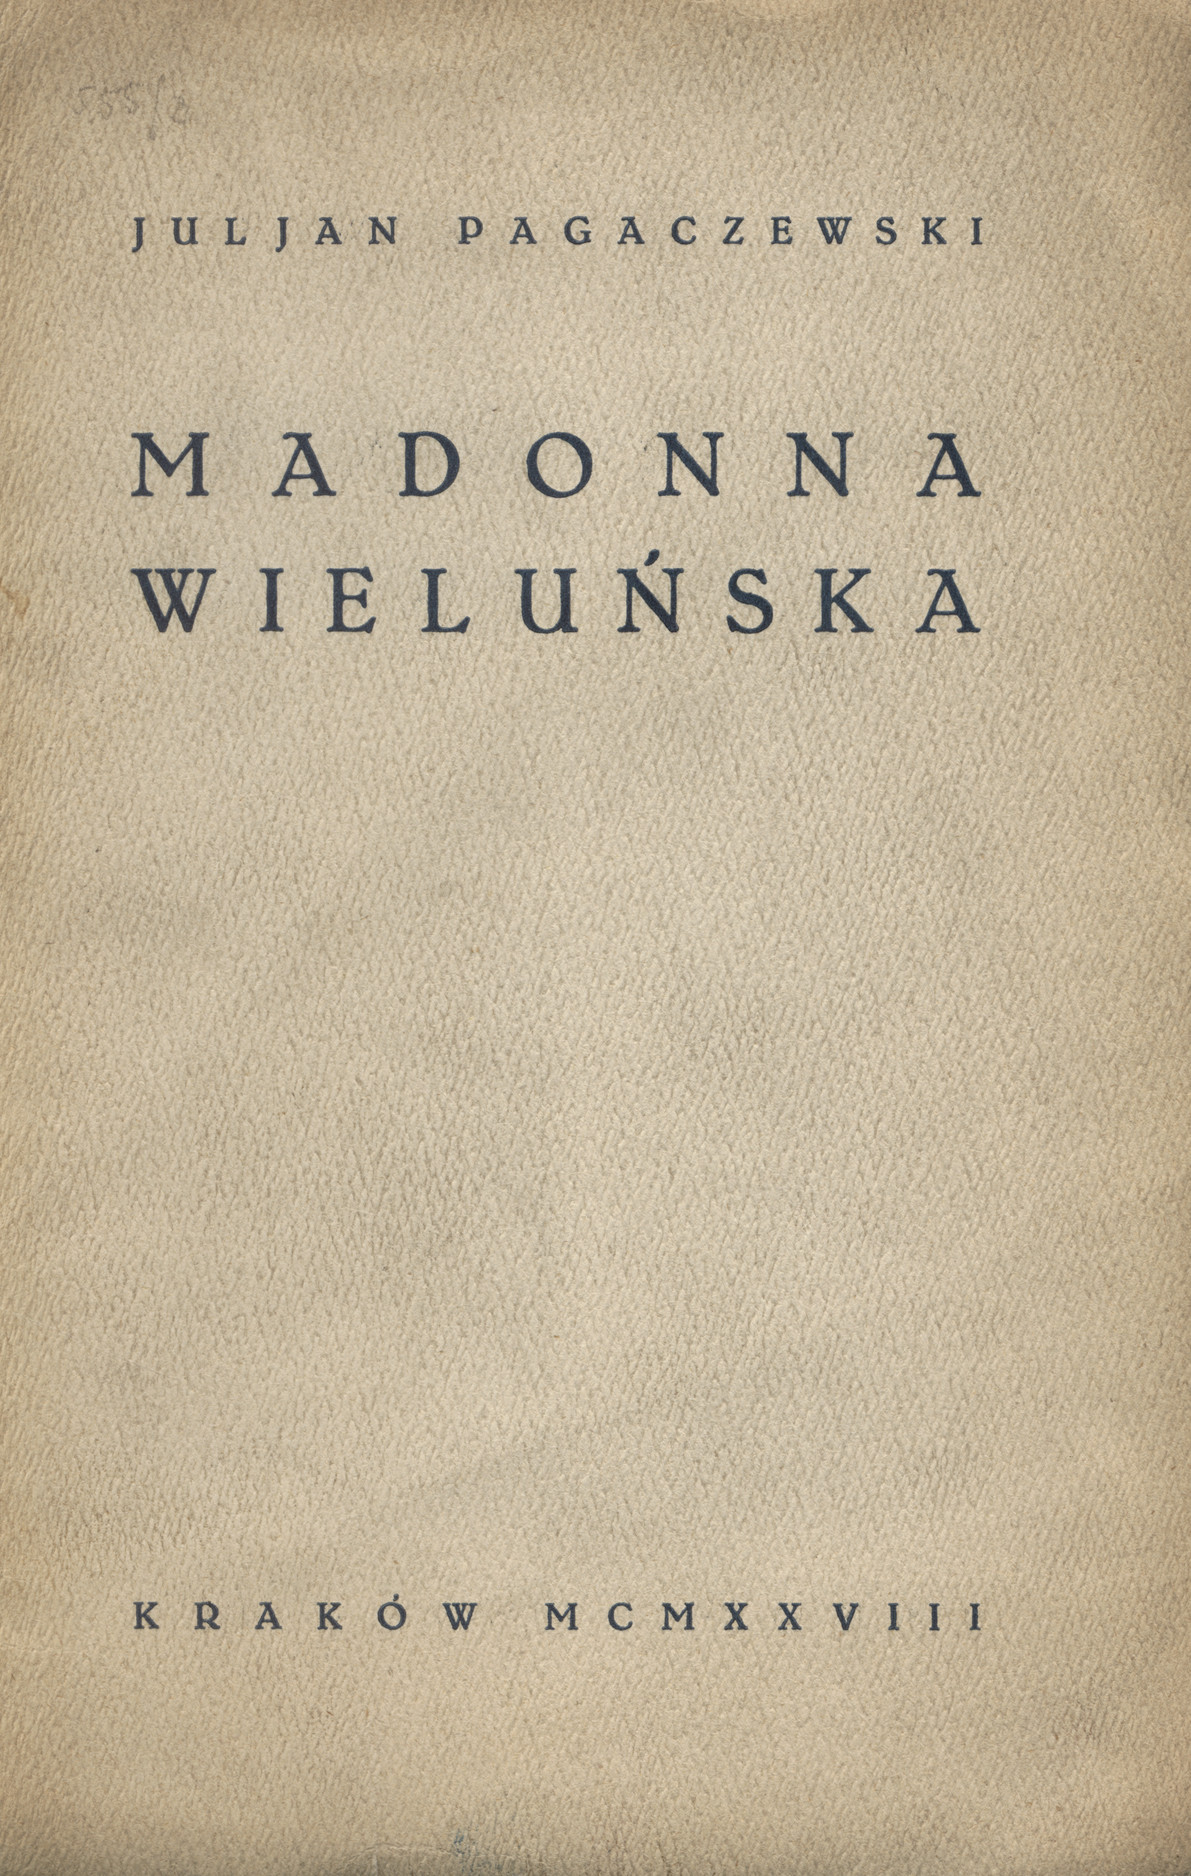 Madonna wieluńska